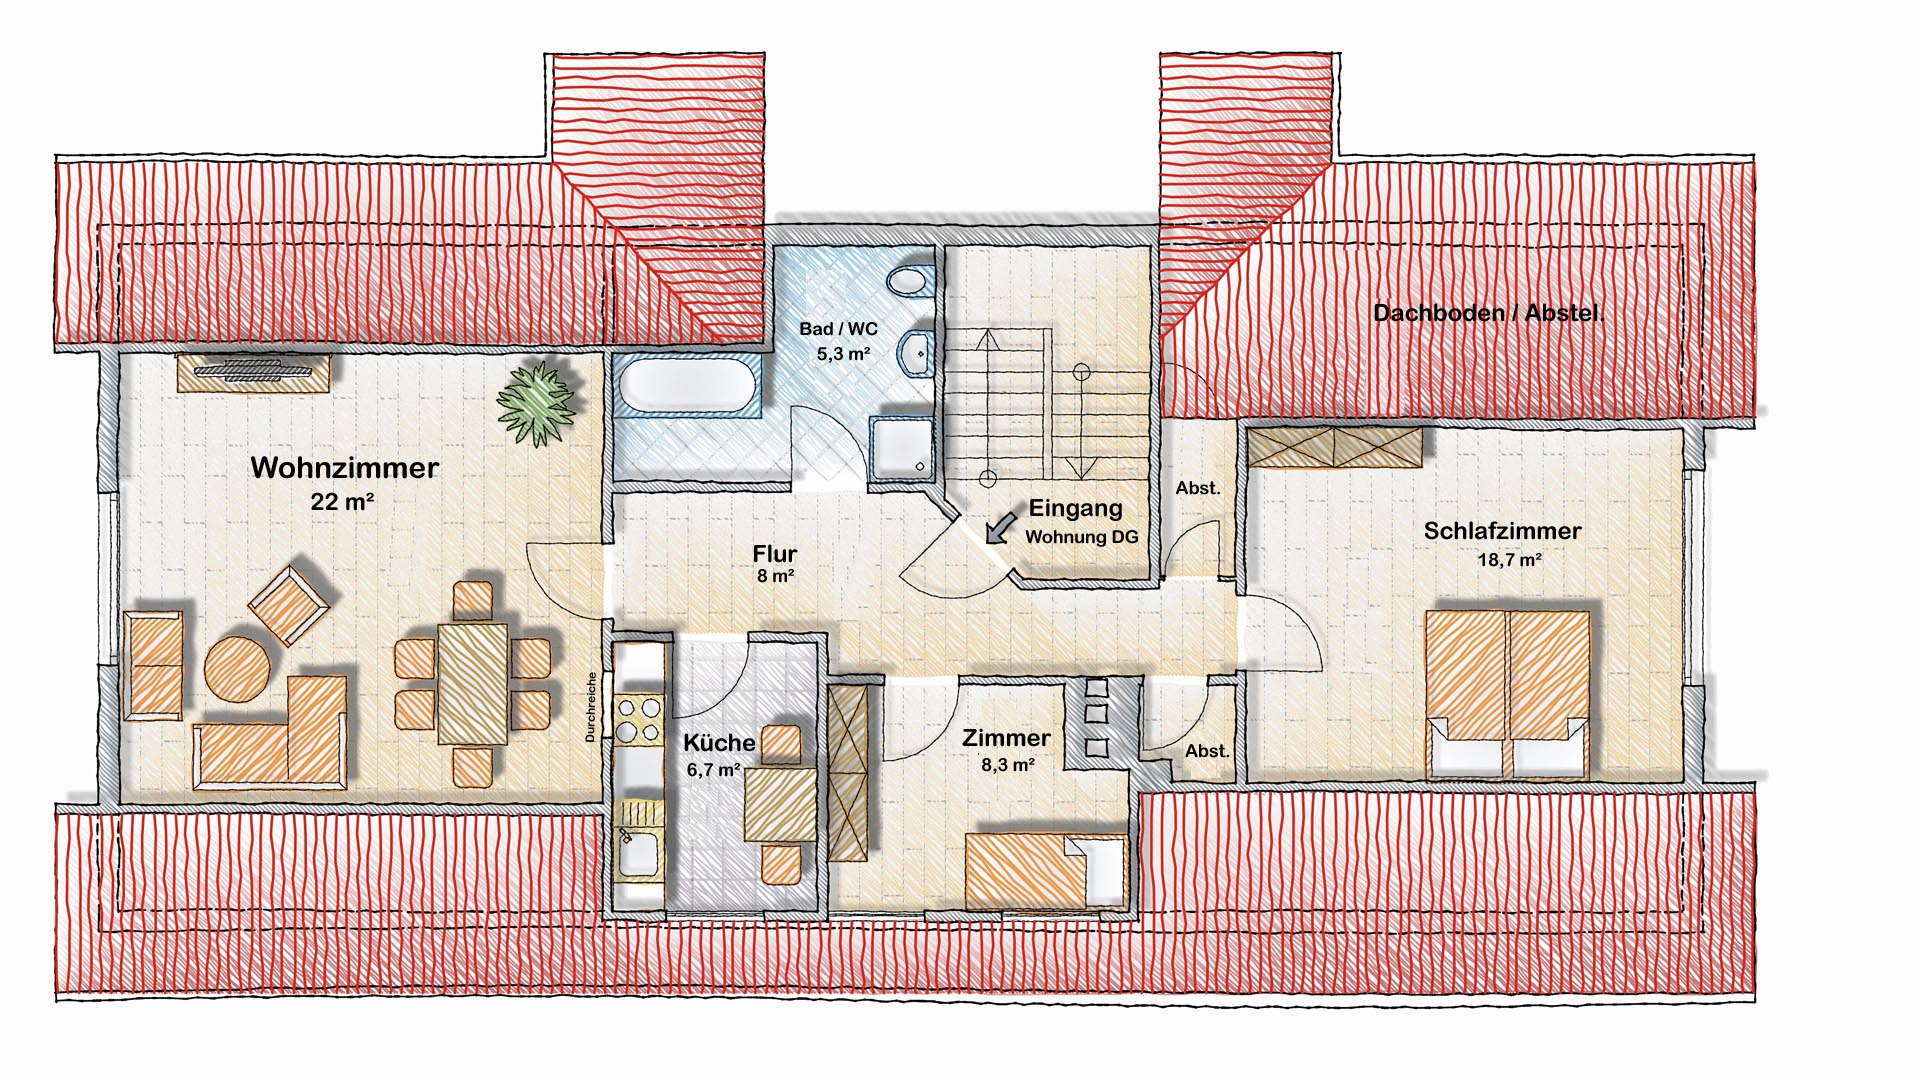 Reichshof-Wildbergerhütte: Wohnhaus mit 3 Wohneinheiten und 4 Garagen, Grundriss: Dachgeschoss